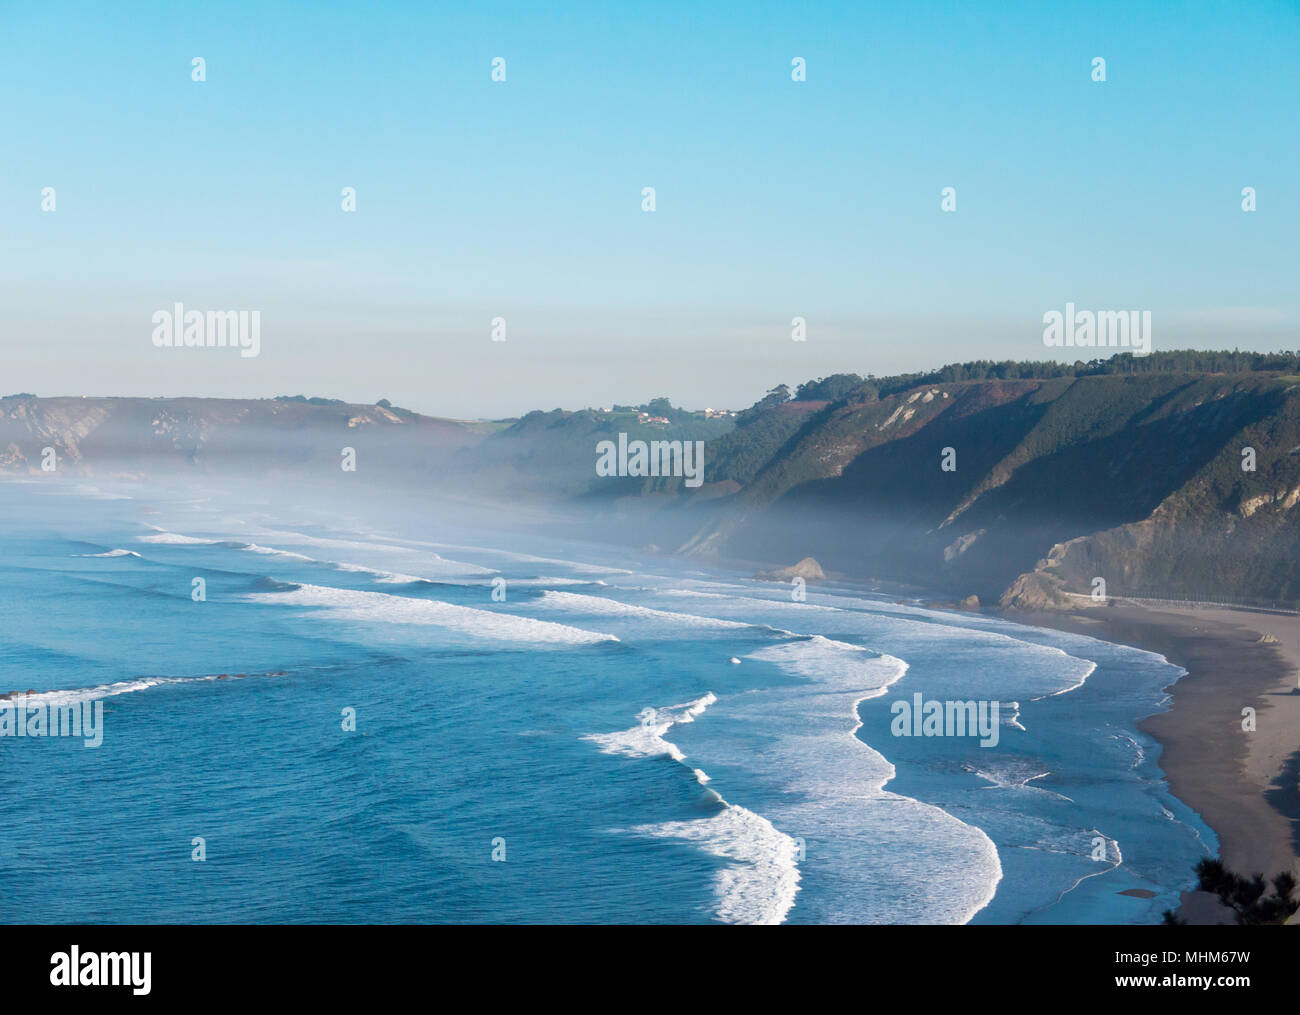 La ligne de côte de l'océan avec de grosses vagues, couverte de brouillard d'eau Banque D'Images